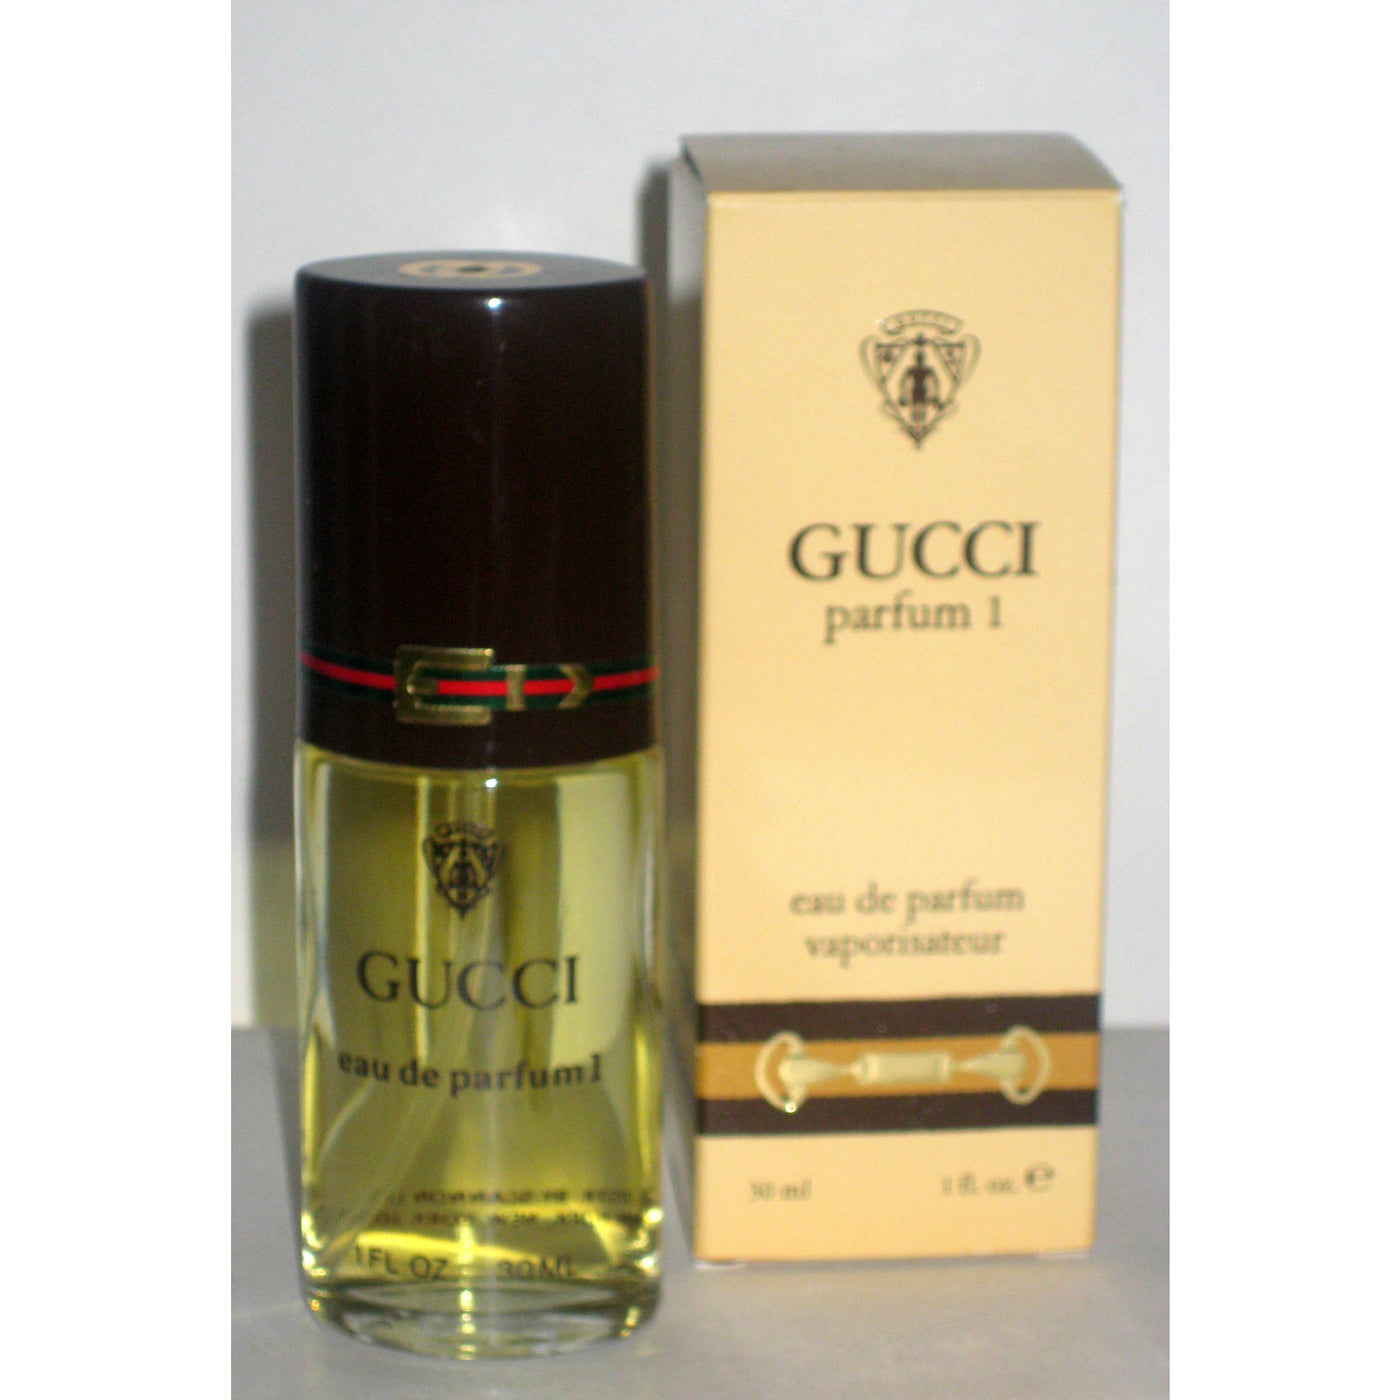 Vintage Gucci Parfum 1 Eau De Parfum Vaporisateur